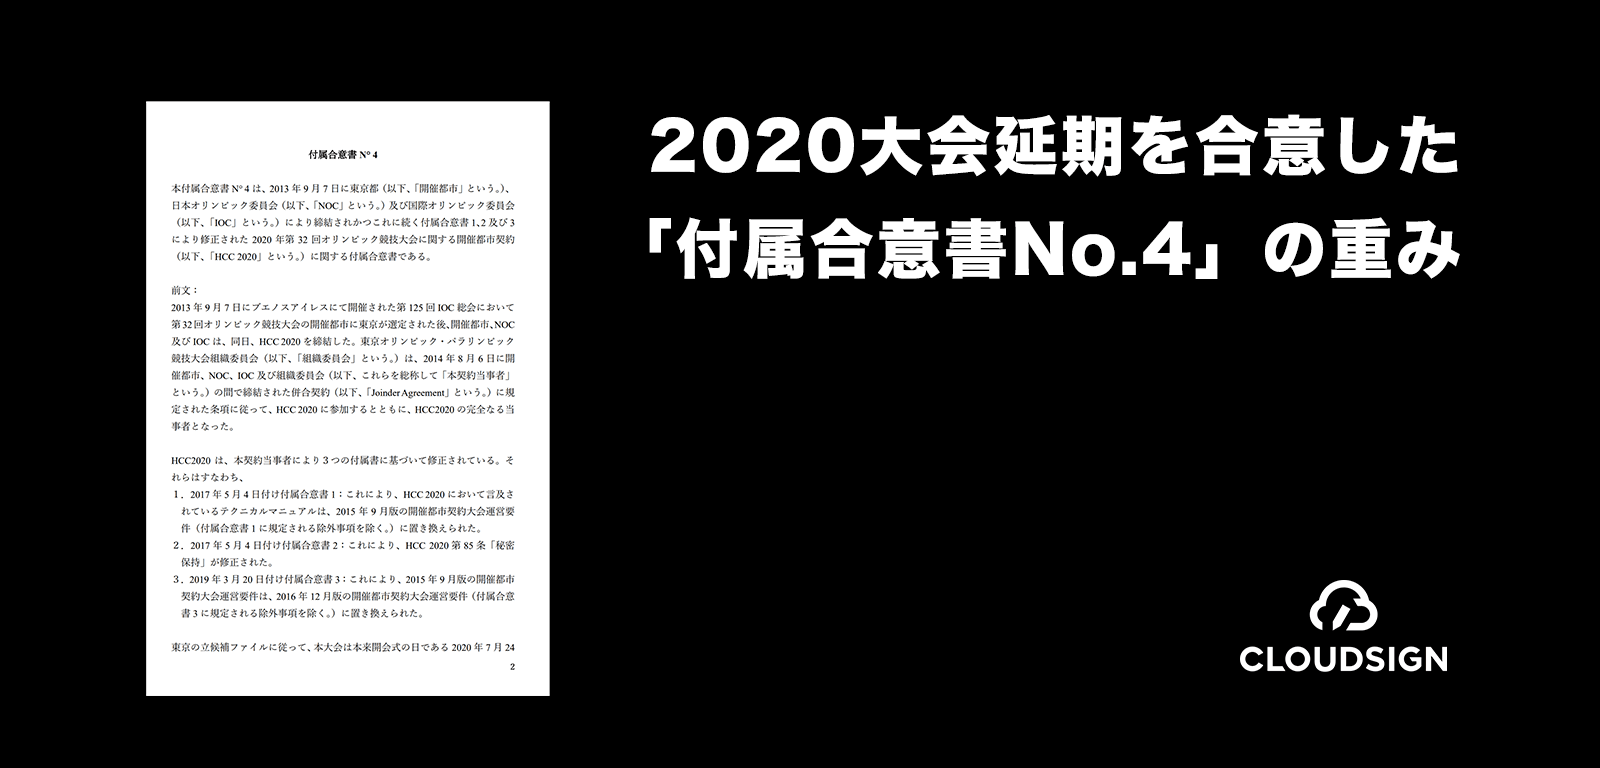 2020大会延期を合意した「付属合意書No.4」の重み